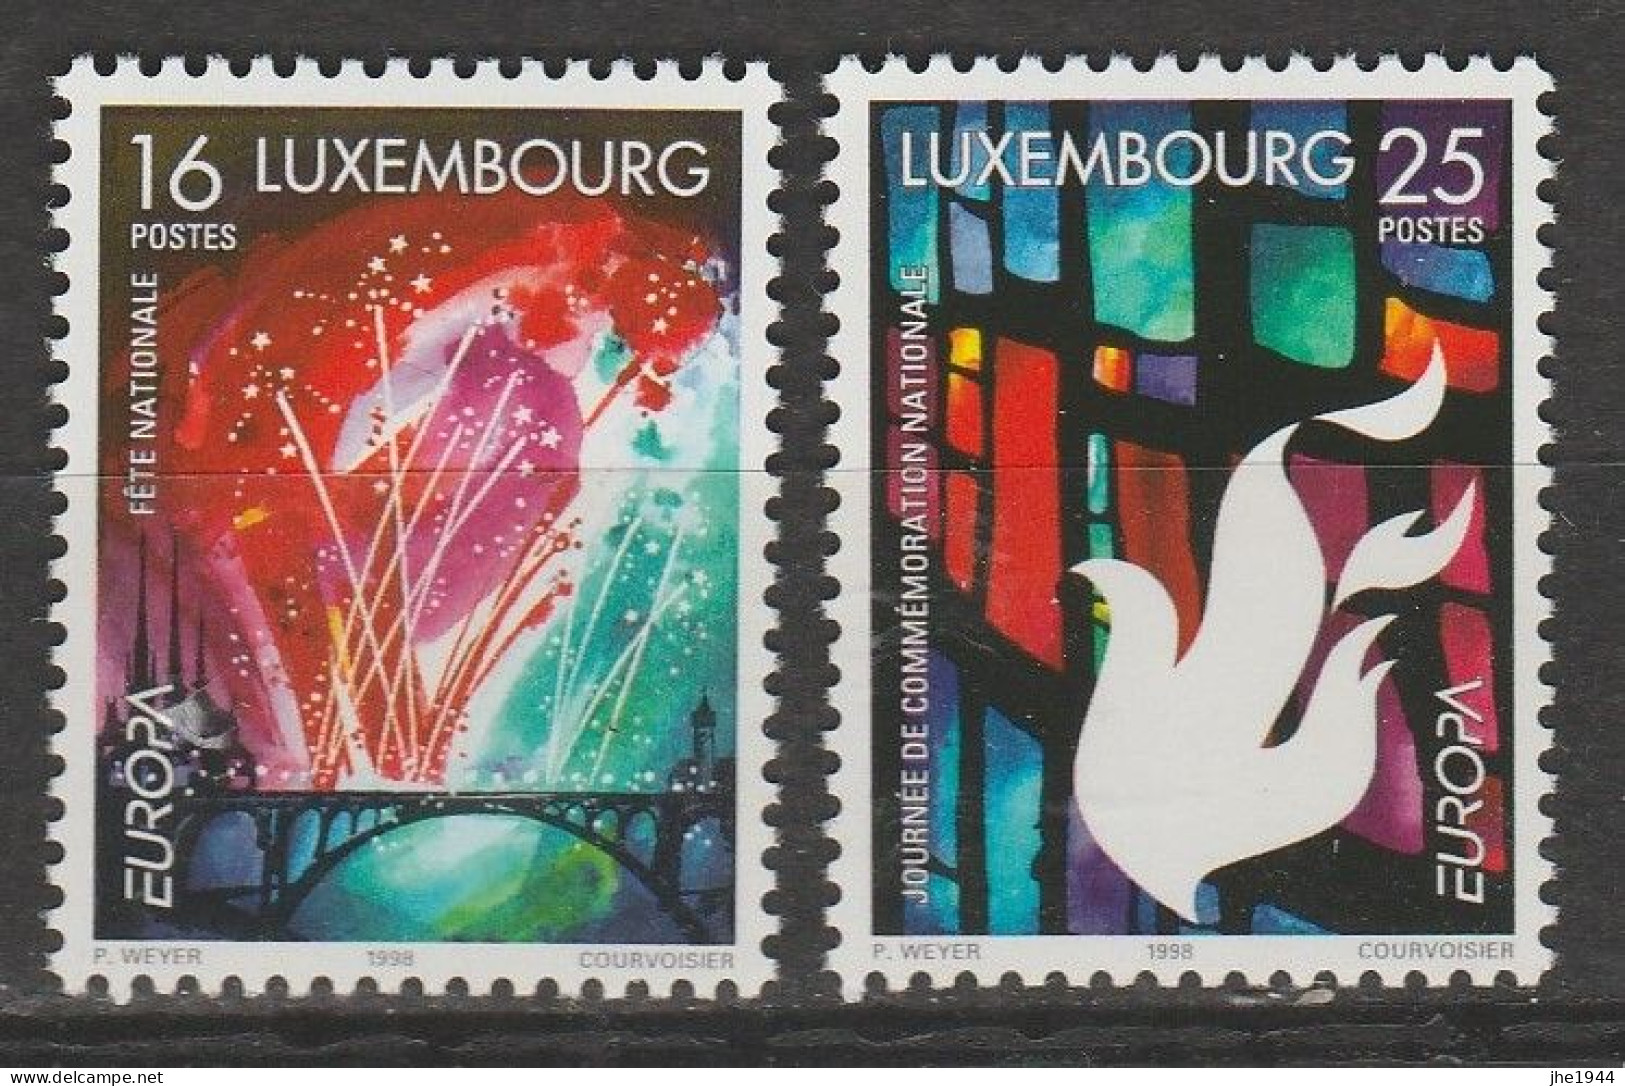 Europa 1998 Festivals nationaux Voir liste des timbres à vendre **